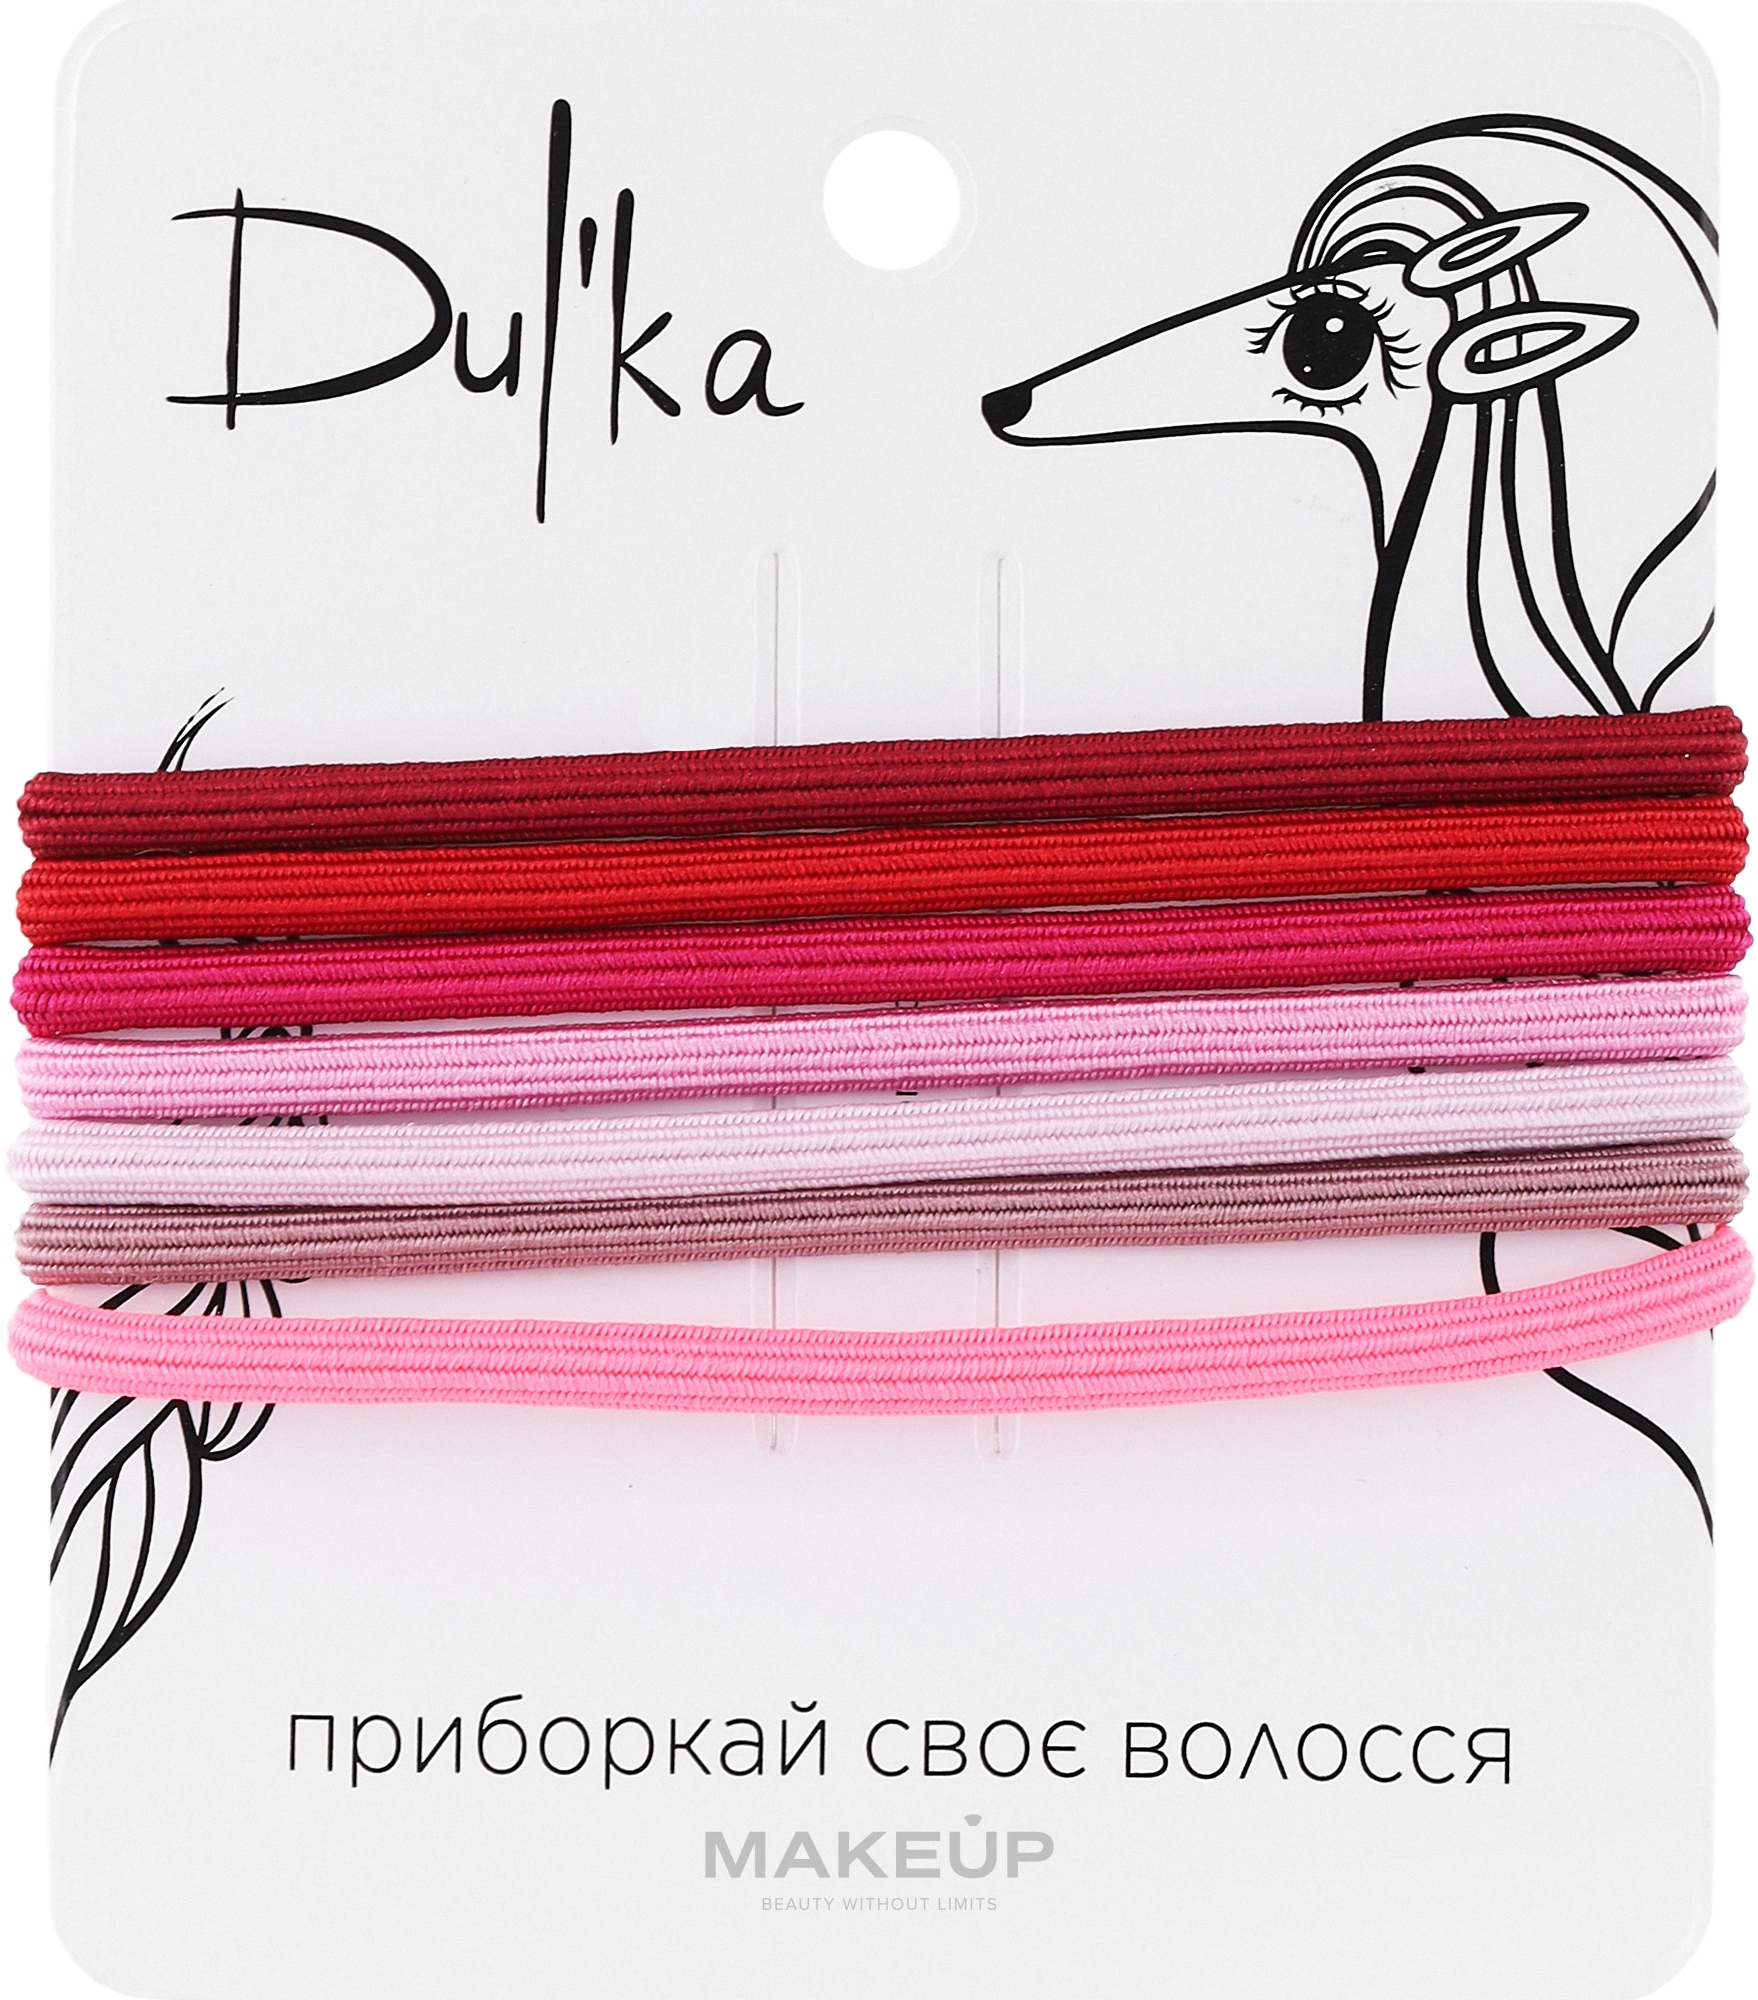 Набор разноцветных резинок для волос UH717707, 7 шт - Dulka  — фото 7шт